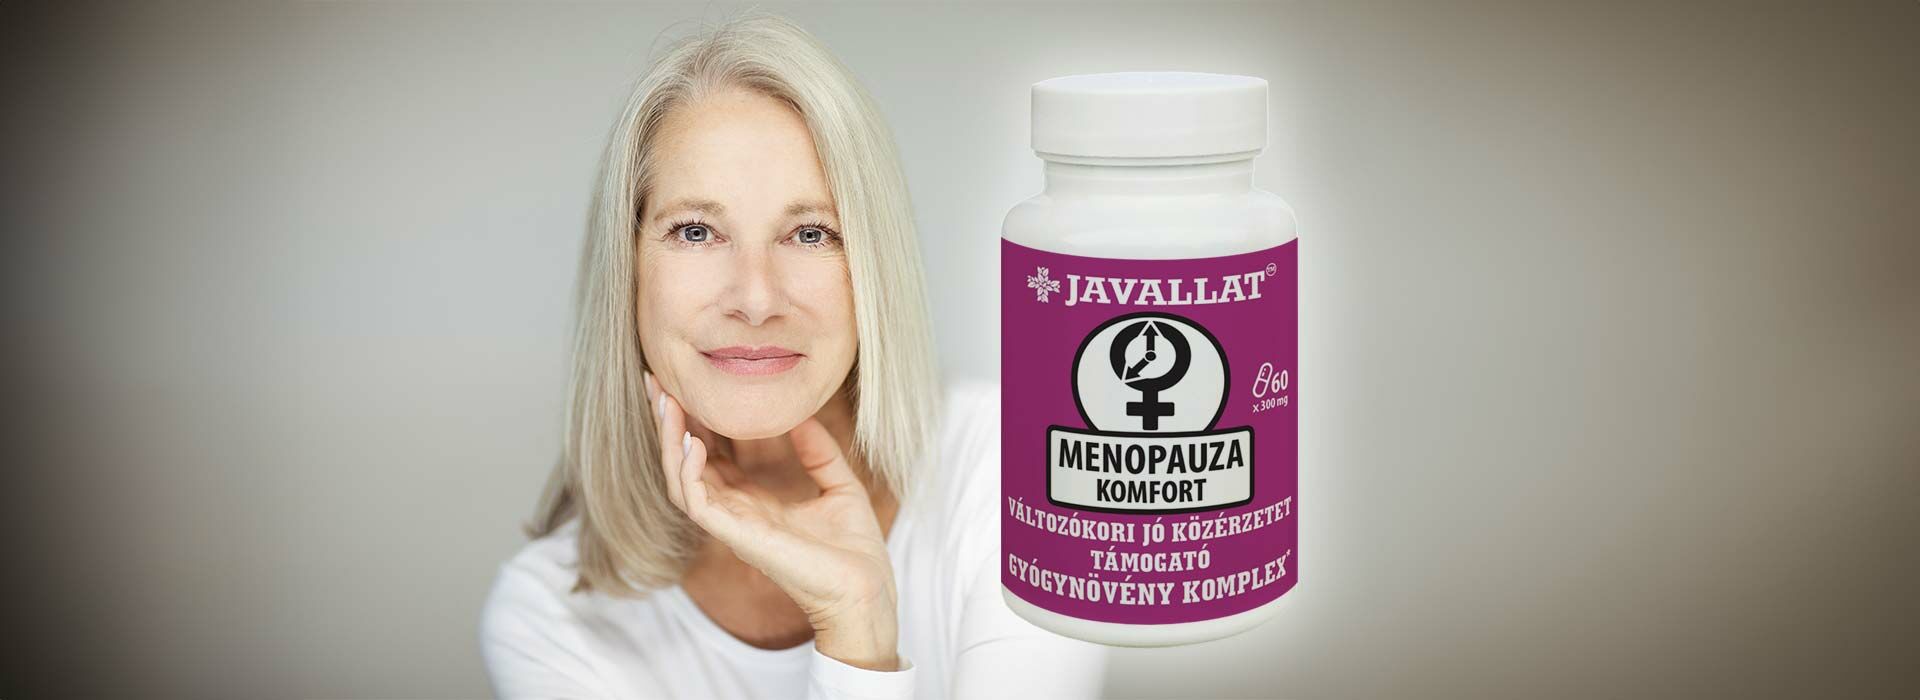 Menopauza